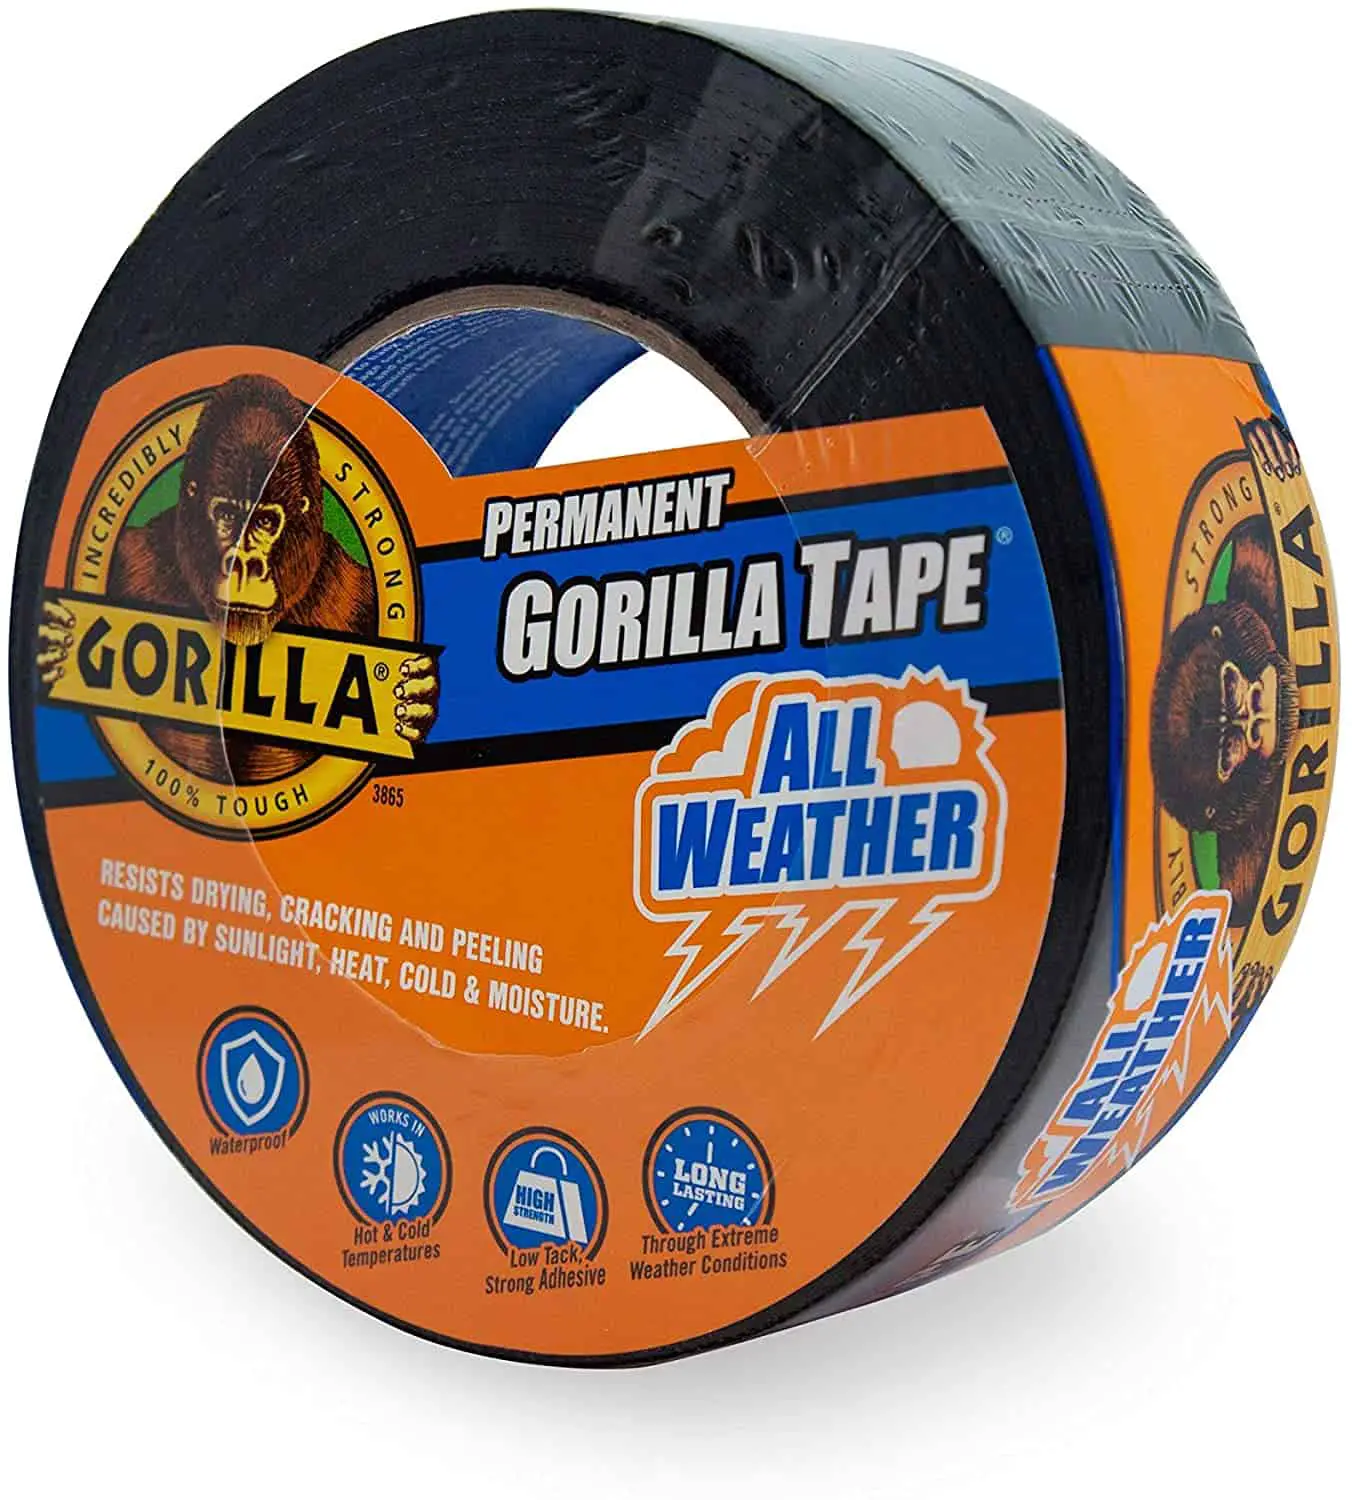 Beste waterdichte tape voor gebruik buitenshuis - Gorilla waterdichte ducttape voor alle weersomstandigheden voor buiten